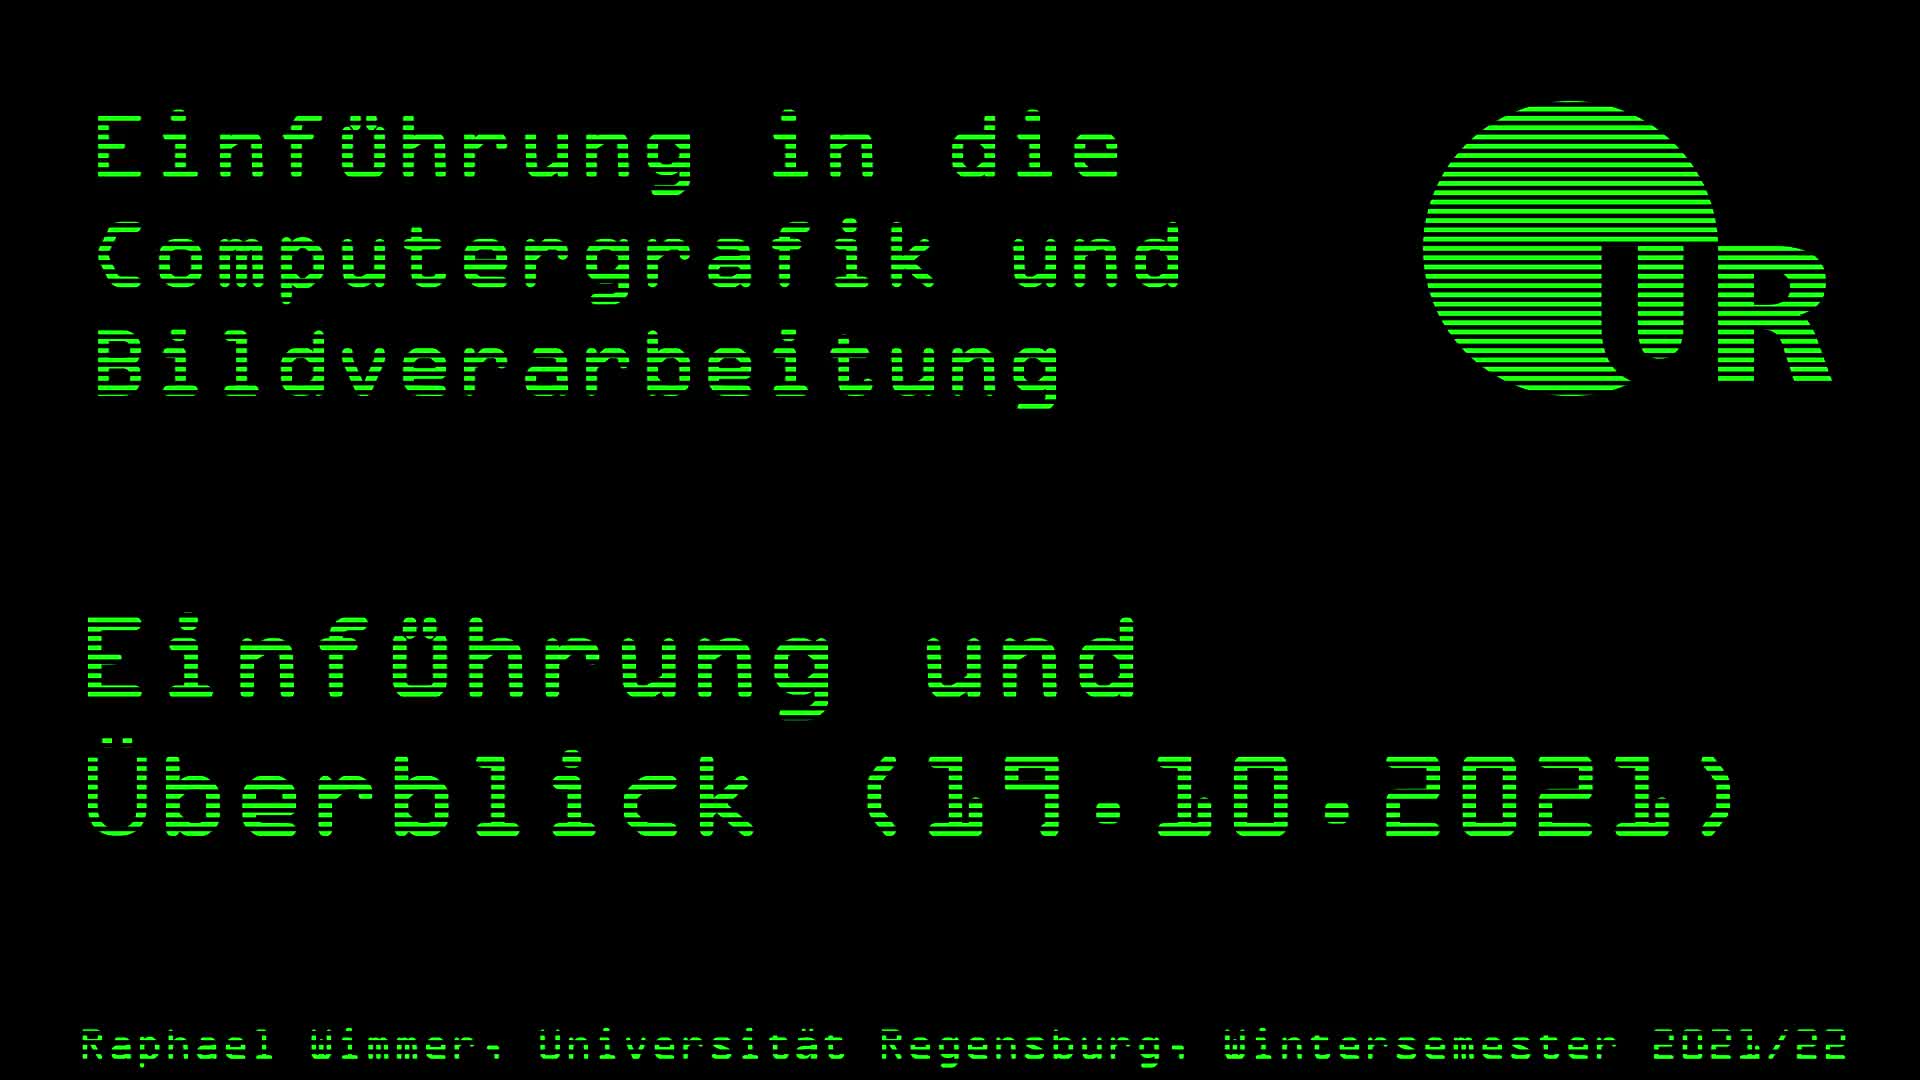 Computergrafik und Bildverarbeitung 01: Einführung und Überblick (19.10.2021)